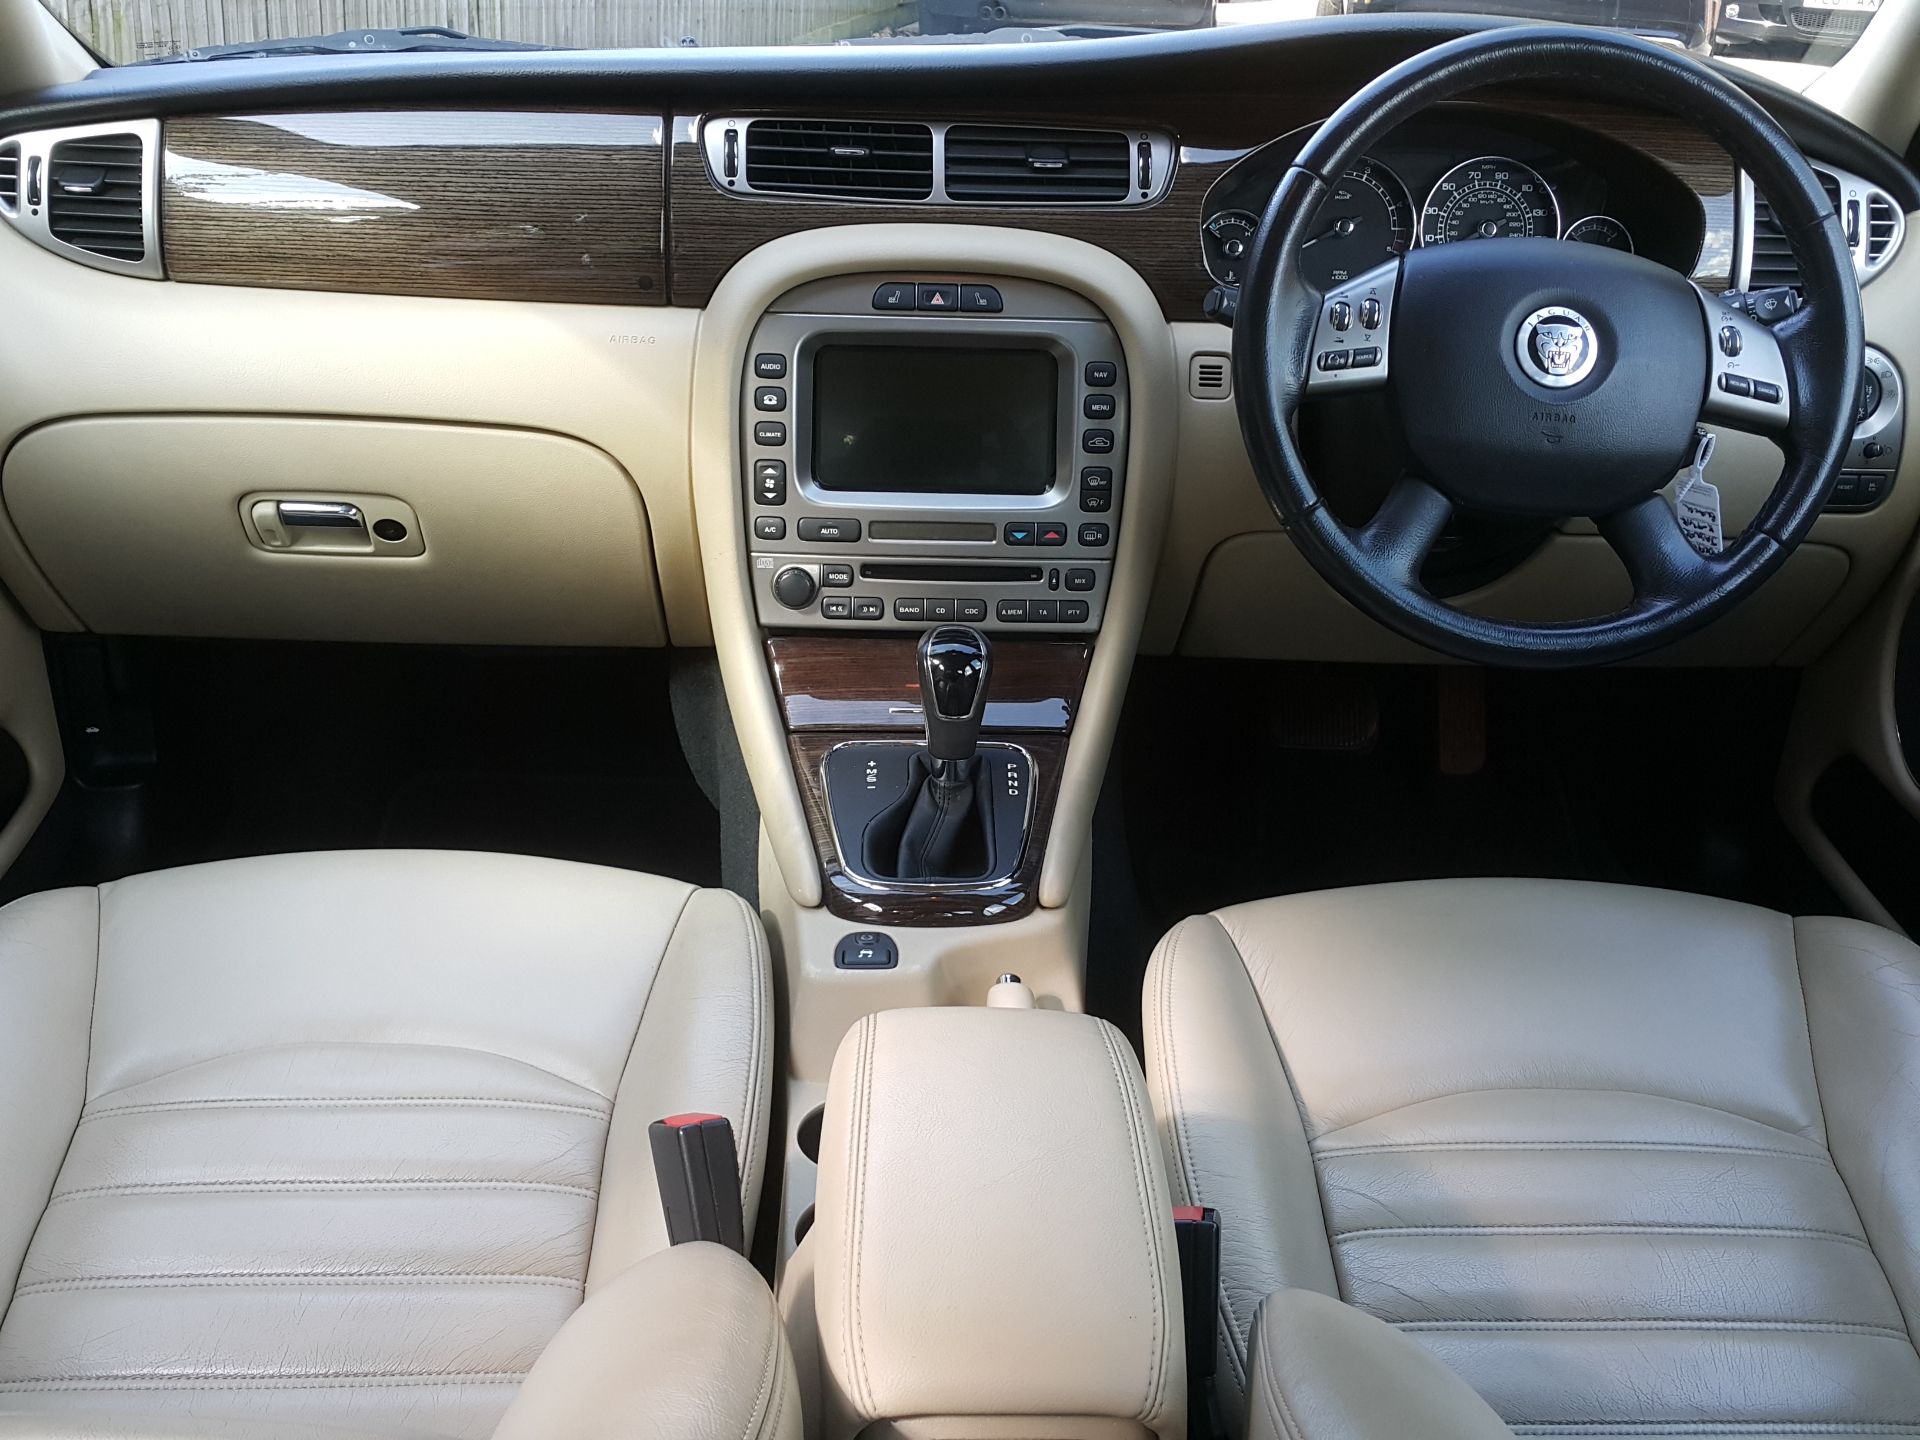 Jaguar X Type SE - Saloon, Automatic, Diesel, 85000 Miles, MOT'd Until May 2018 - Buyers Premium 7% - Image 9 of 19